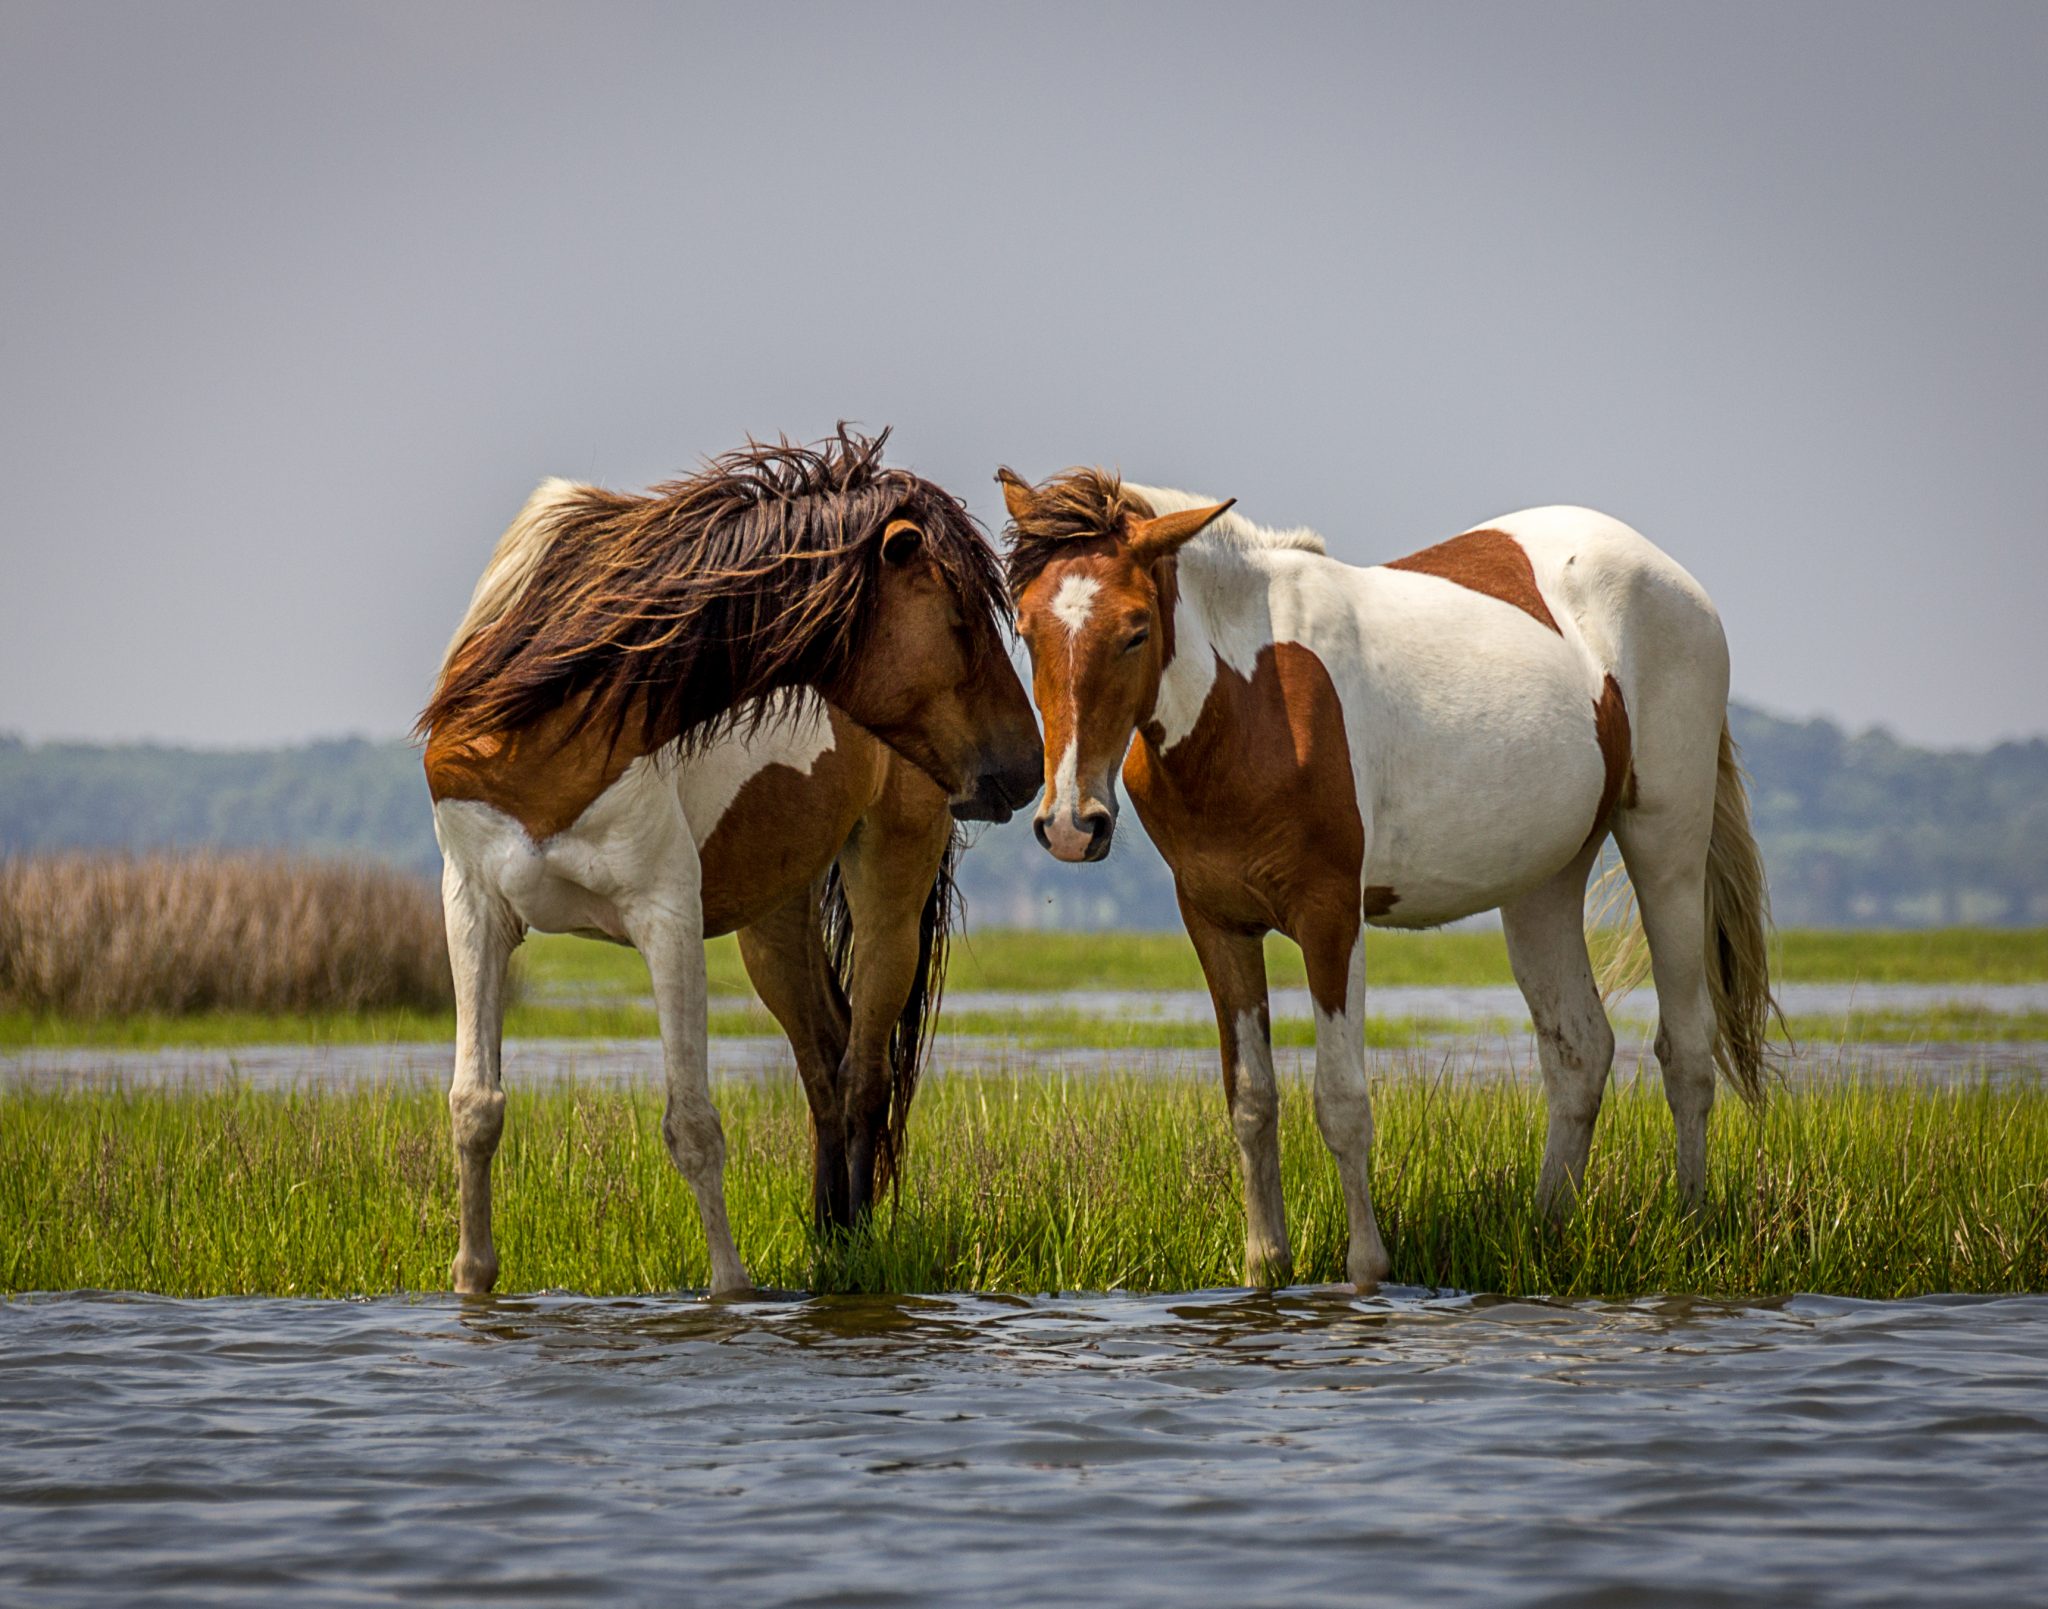 Bigstock_-35367994-Wild-Horses-Chesapeake-Bay1.jpg